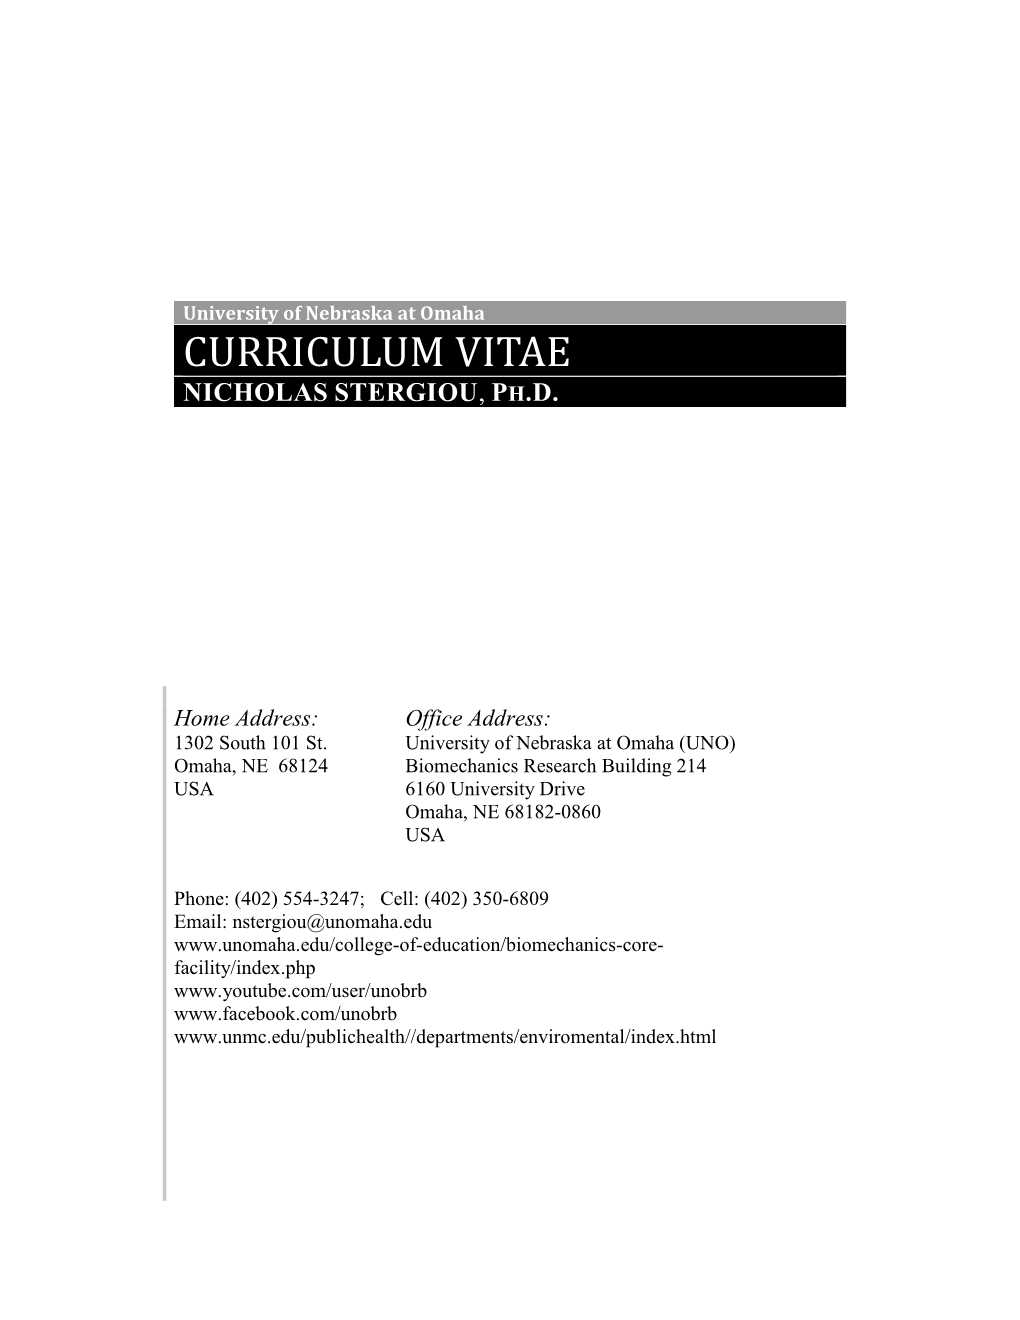 Curriculum Vitae Nicholas Stergiou, Ph.D